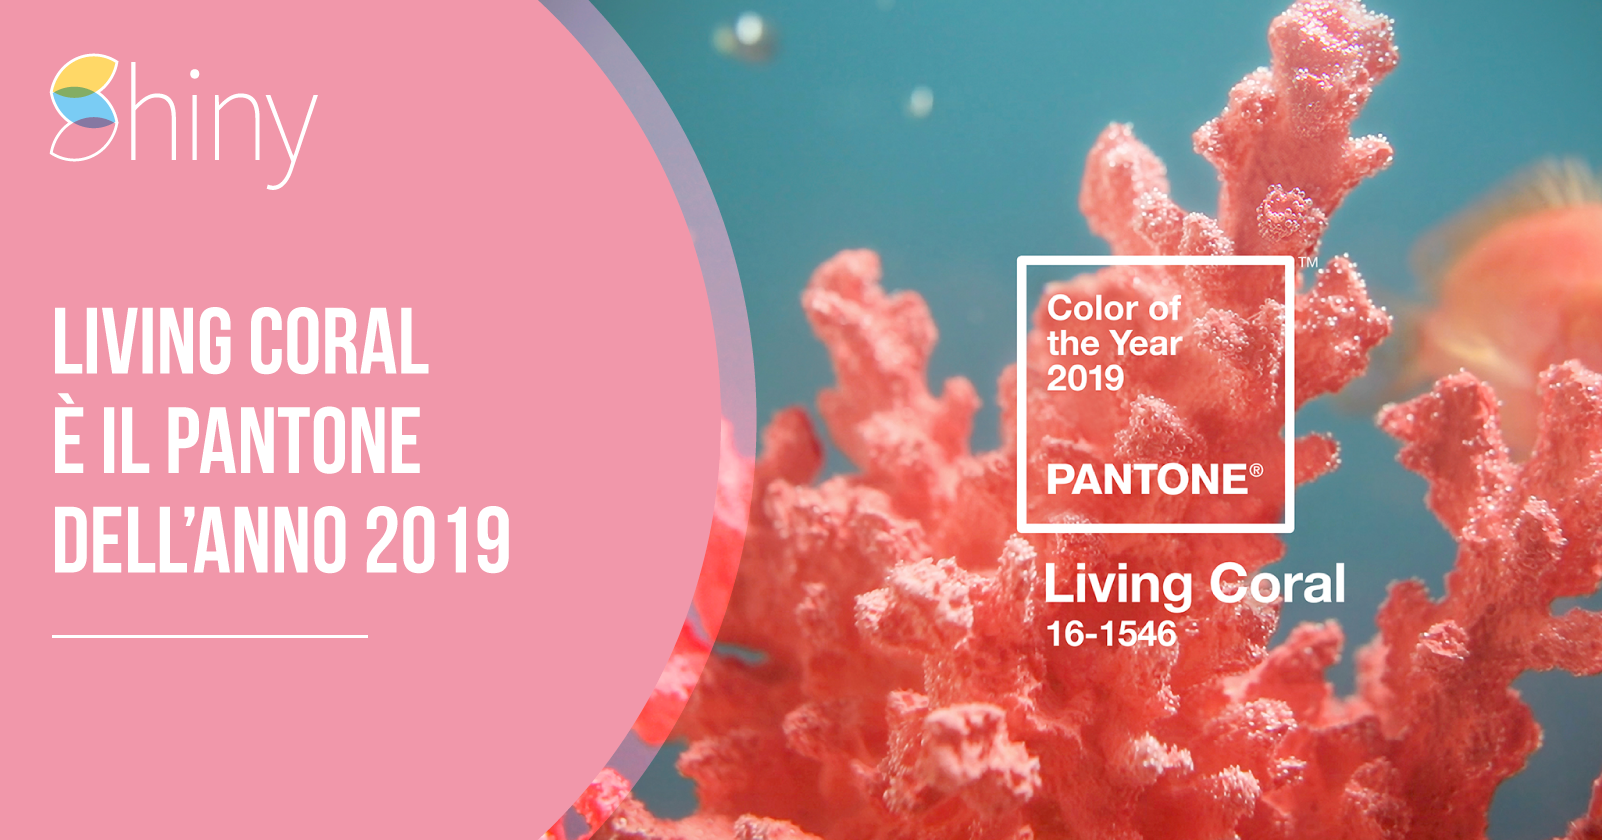 You are currently viewing Living Coral è il colore Pantone dell’anno 2019!